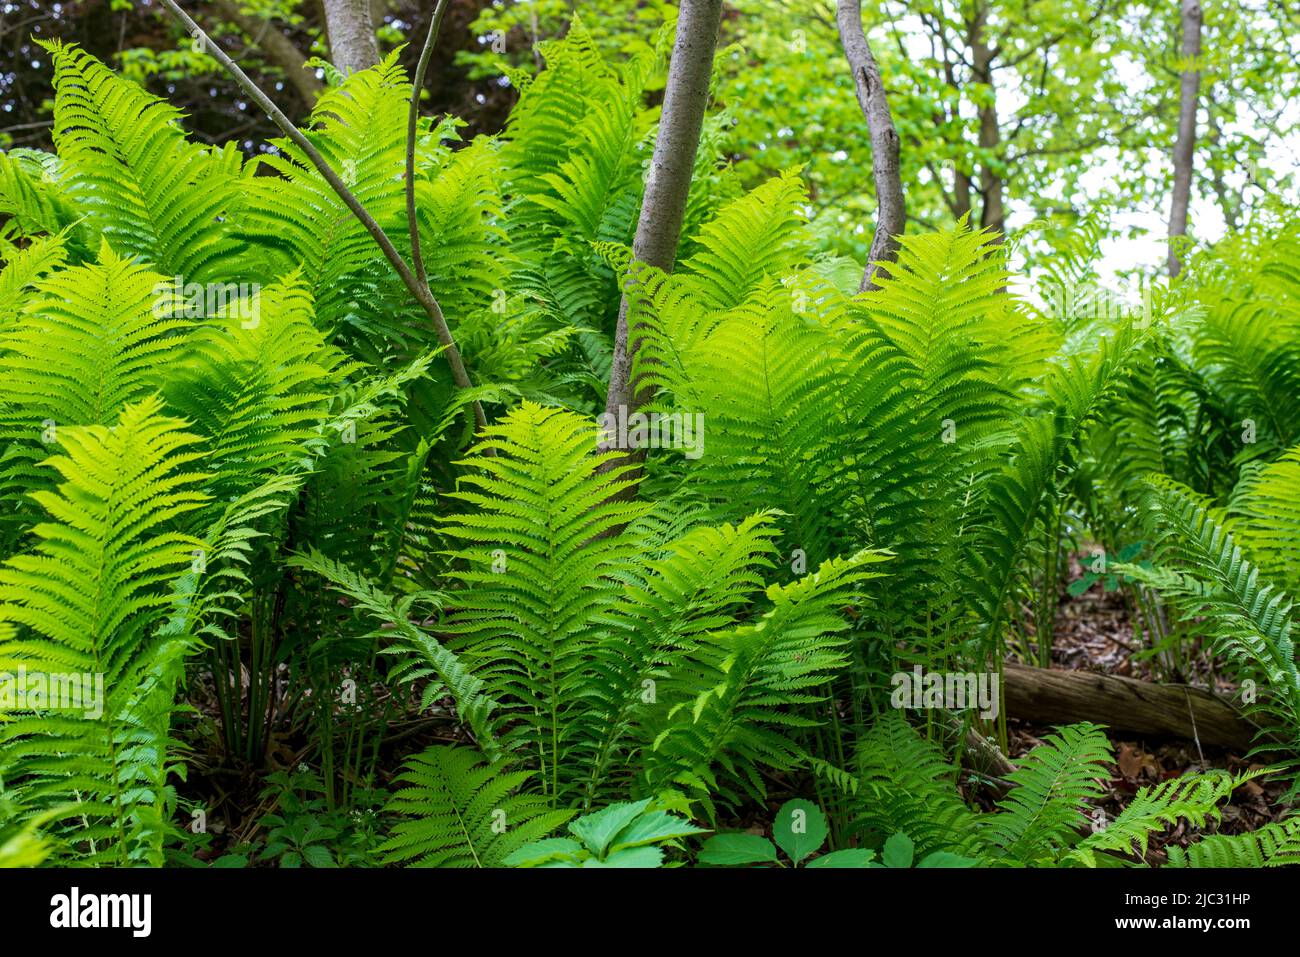 Paesaggio ritratto di belle felci verdi catturato in un ambiente forestale nella sobria. Foto Stock